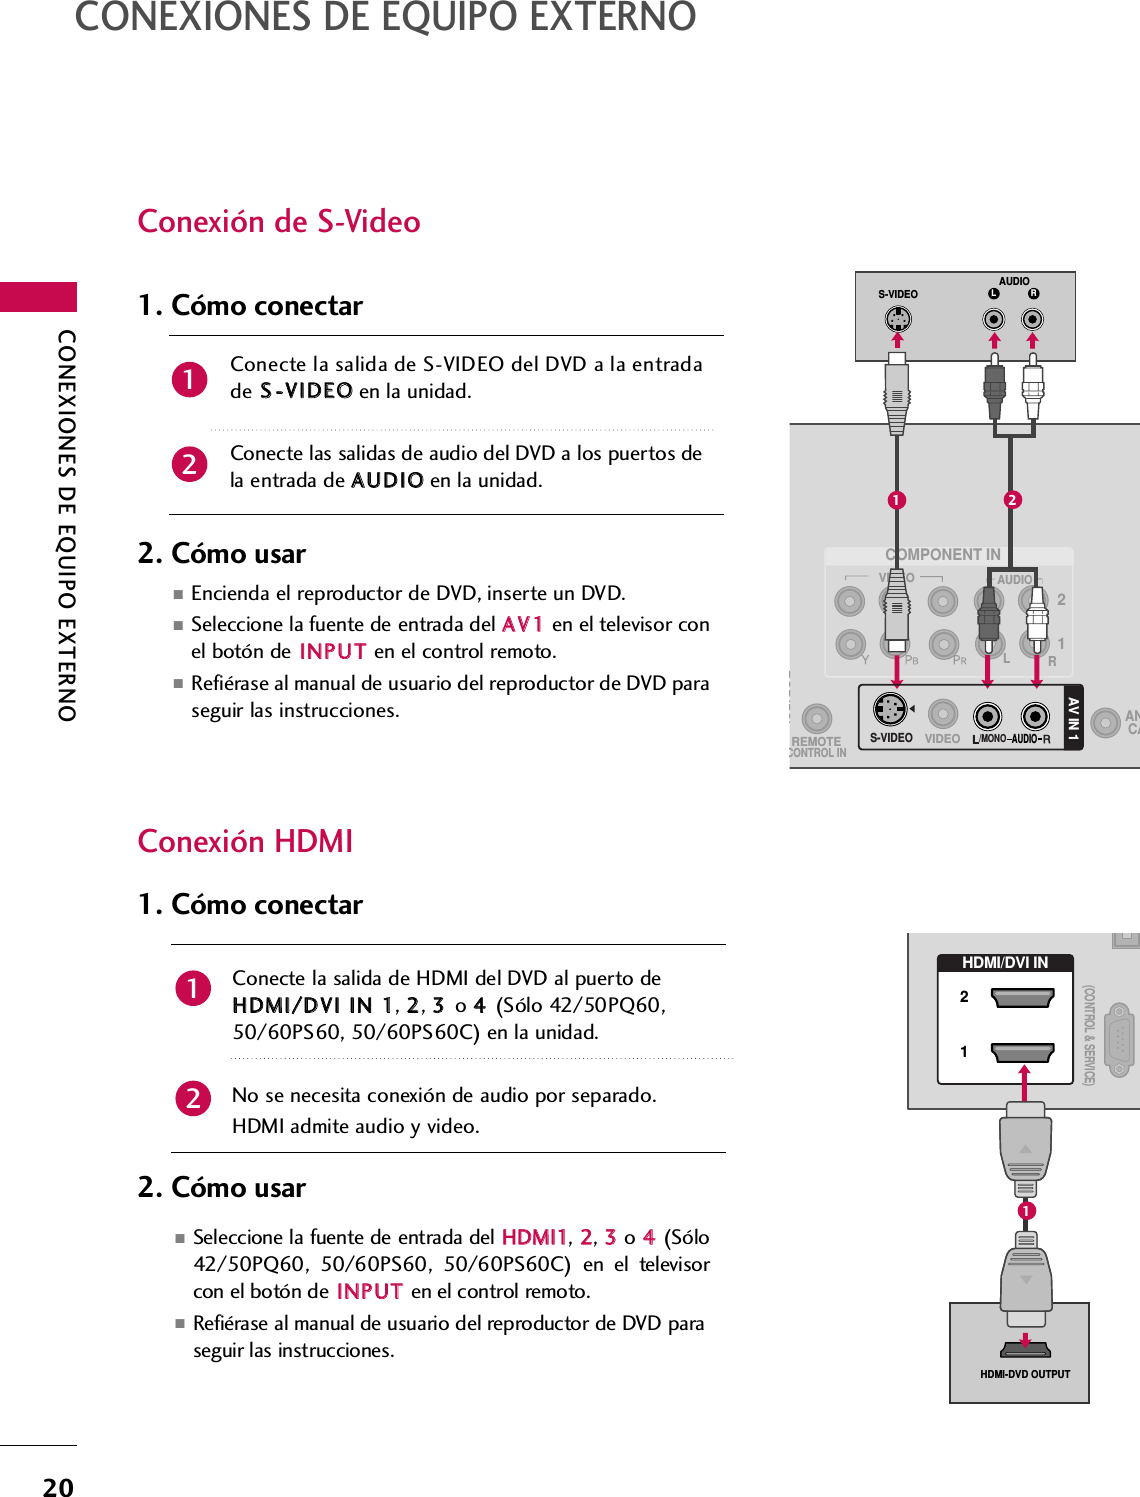 CONEXIONES DE EQUIPO EXTERNO20CONEXIONES DE EQUIPO EXTERNOConexión de S-VideoConexión HDMIConecte la salida de HDMI del DVD al puerto deHHDDMMII//DDVVII  IINN  11, 22, 33  o 44  (Sólo 42/50PQ60,50/60PS60, 50/60PS60C) en la unidad.No se necesita conexión de audio por separado. HDMI admite audio y video. 1. Cómo conectar2. Cómo usar ■Seleccione la fuente de entrada del HHDDMMII11, 22, 33o 44  (Sólo42/50PQ60, 50/60PS60, 50/60PS60C) en el televisorcon el botón de IINNPPUUTTen el control remoto.■Refiérase al manual de usuario del reproductor de DVD paraseguir las instrucciones.2112VIDEOAUDIOLRRGB(PC)REMOTECONTROL INANCACOMPONENT INL RS-VIDEOAUDIOAUDIOAV IN 1S-VIDEO/MONOVIDEO12HDMI/DVI IN 21(CONTROL &amp; SERVICE)HDMI-DVD OUTPUT1Conecte la salida de S-VIDEO del DVD a la entradade SS--VVIIDDEEOOen la unidad.Conecte las salidas de audio del DVD a los puertos dela entrada de AAUUDDIIOOen la unidad.1. Cómo conectar2. Cómo usar ■Encienda el reproductor de DVD, inserte un DVD.■Seleccione la fuente de entrada del AAVV11en el televisor conel botón de IINNPPUUTTen el control remoto.■Refiérase al manual de usuario del reproductor de DVD paraseguir las instrucciones.21